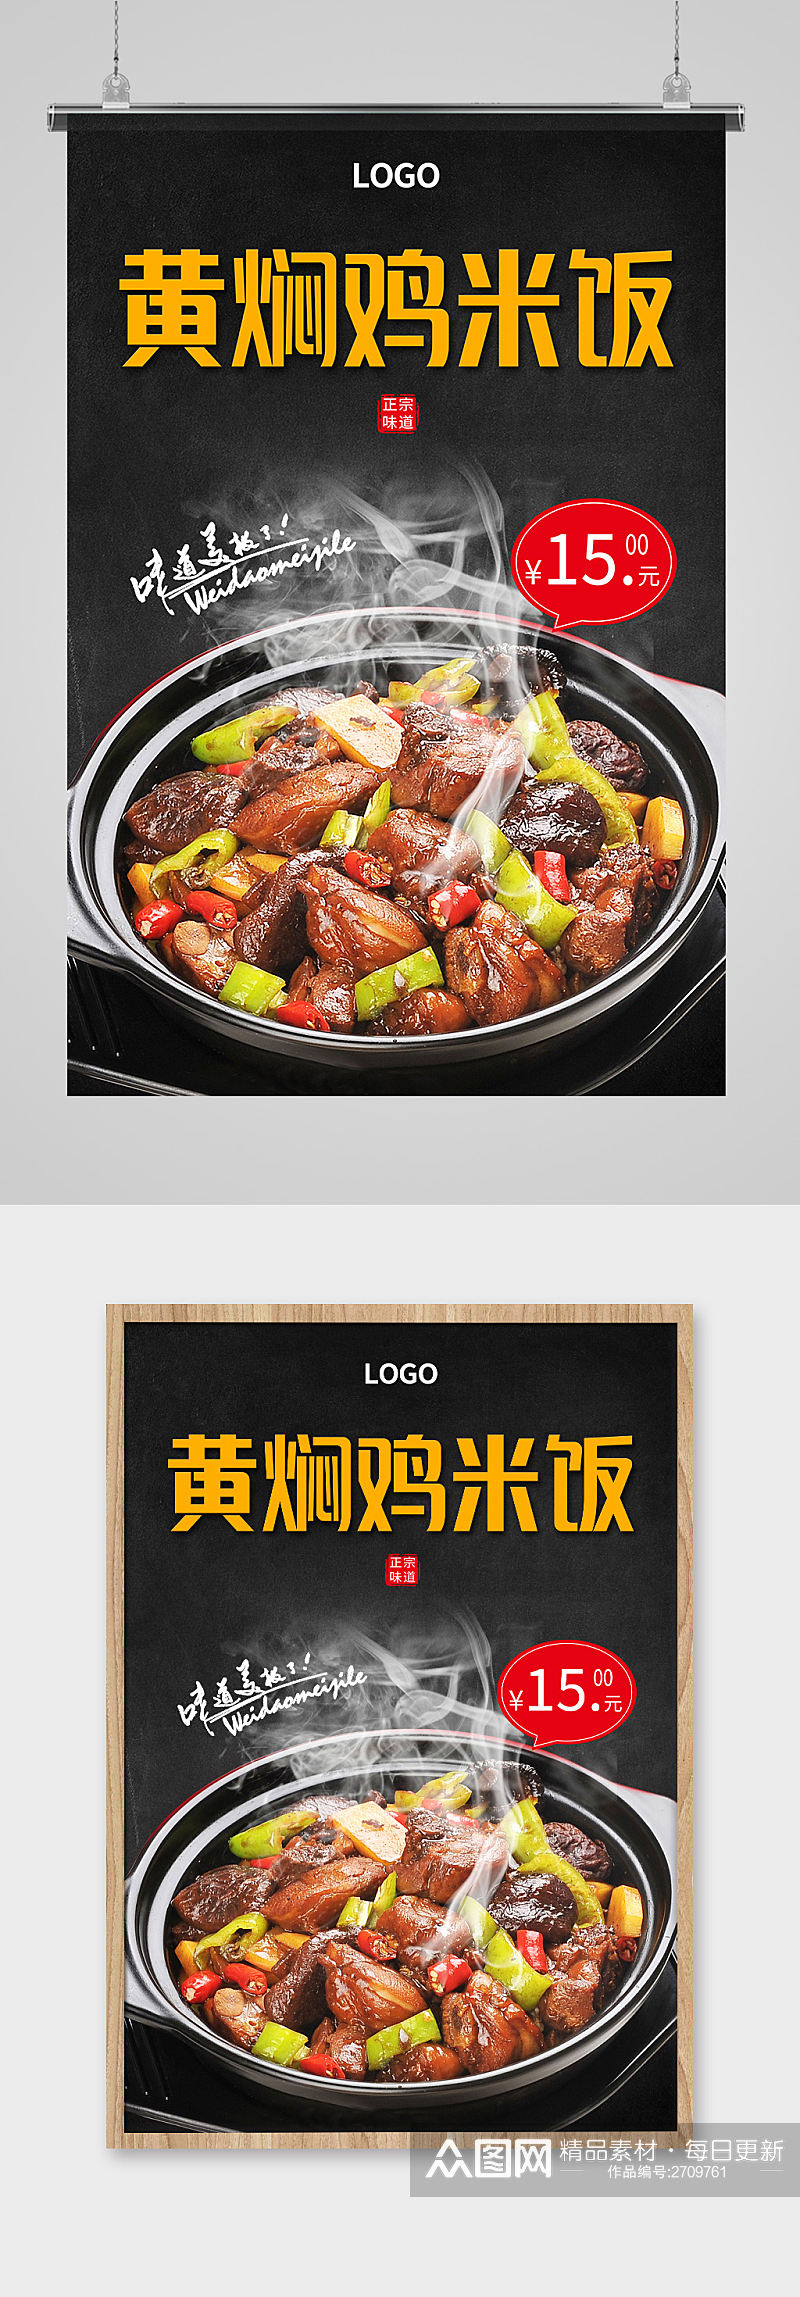 黑色简约大气黄焖鸡米饭美食海报设计素材